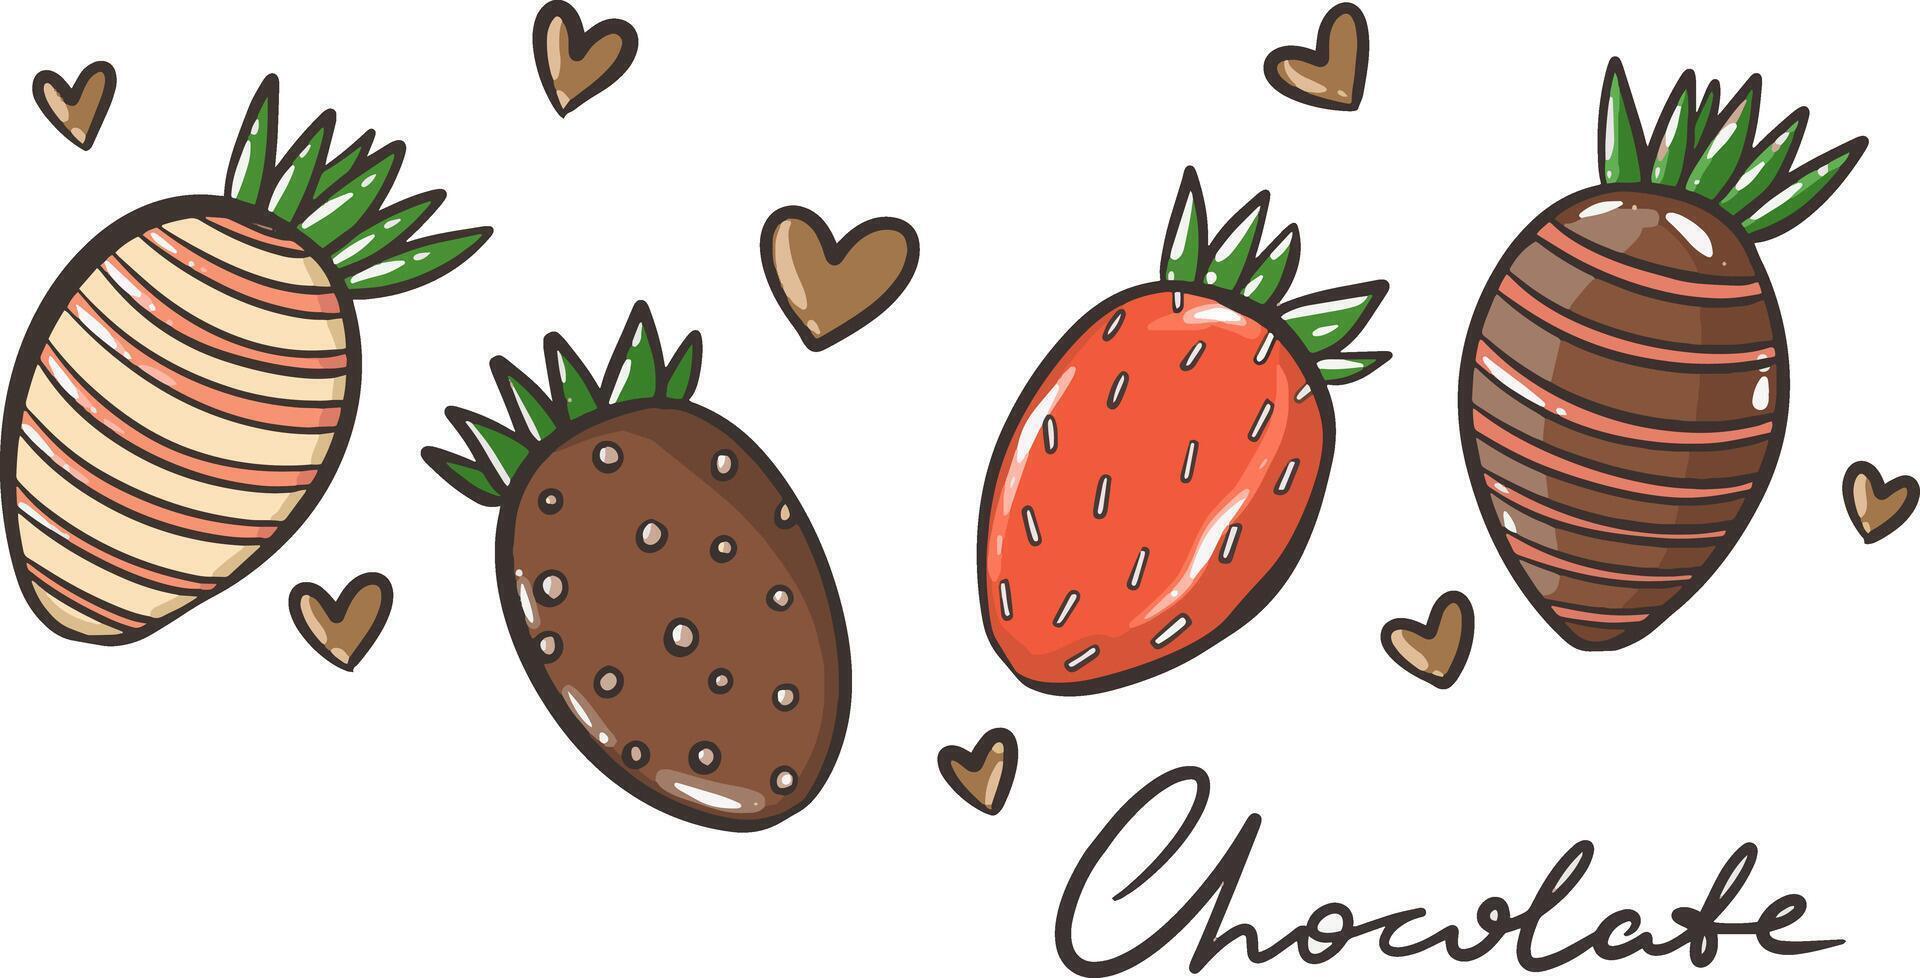 Chocolat couvert des fraises, Frais Chocolat couvert baies dans dessin animé style vecteur